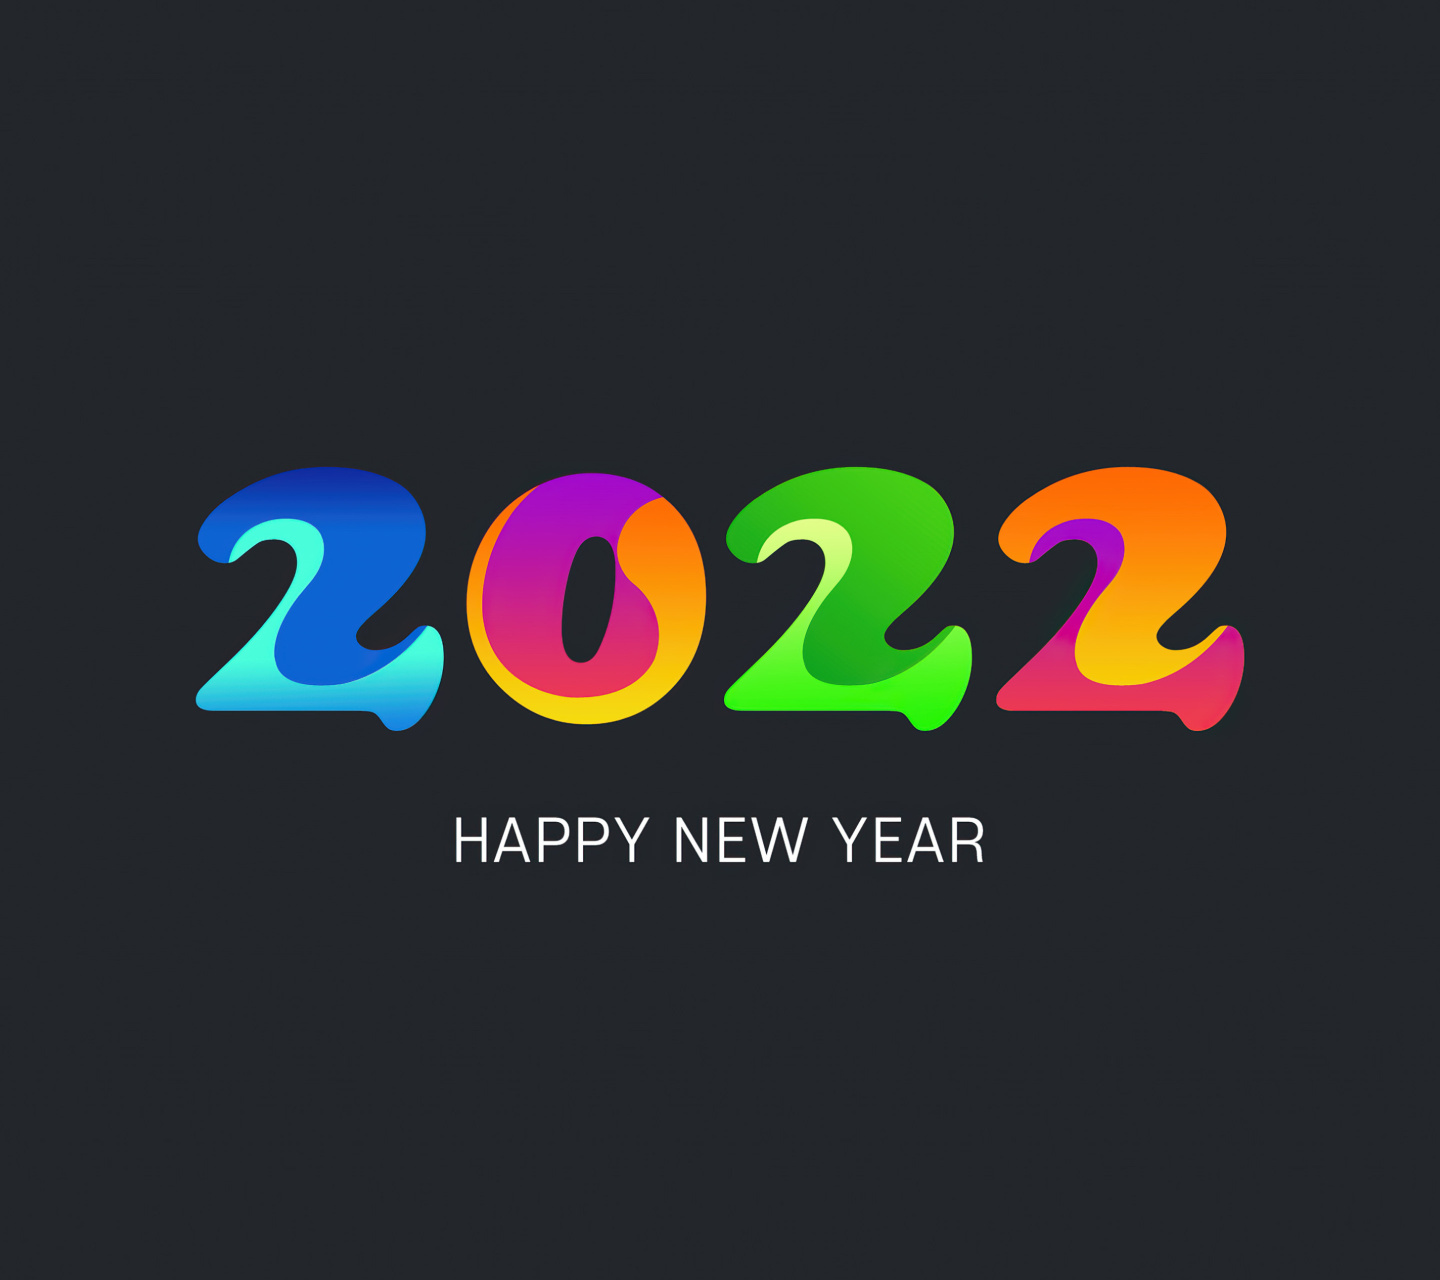 Happy new year 2022 screenshot #1 1440x1280